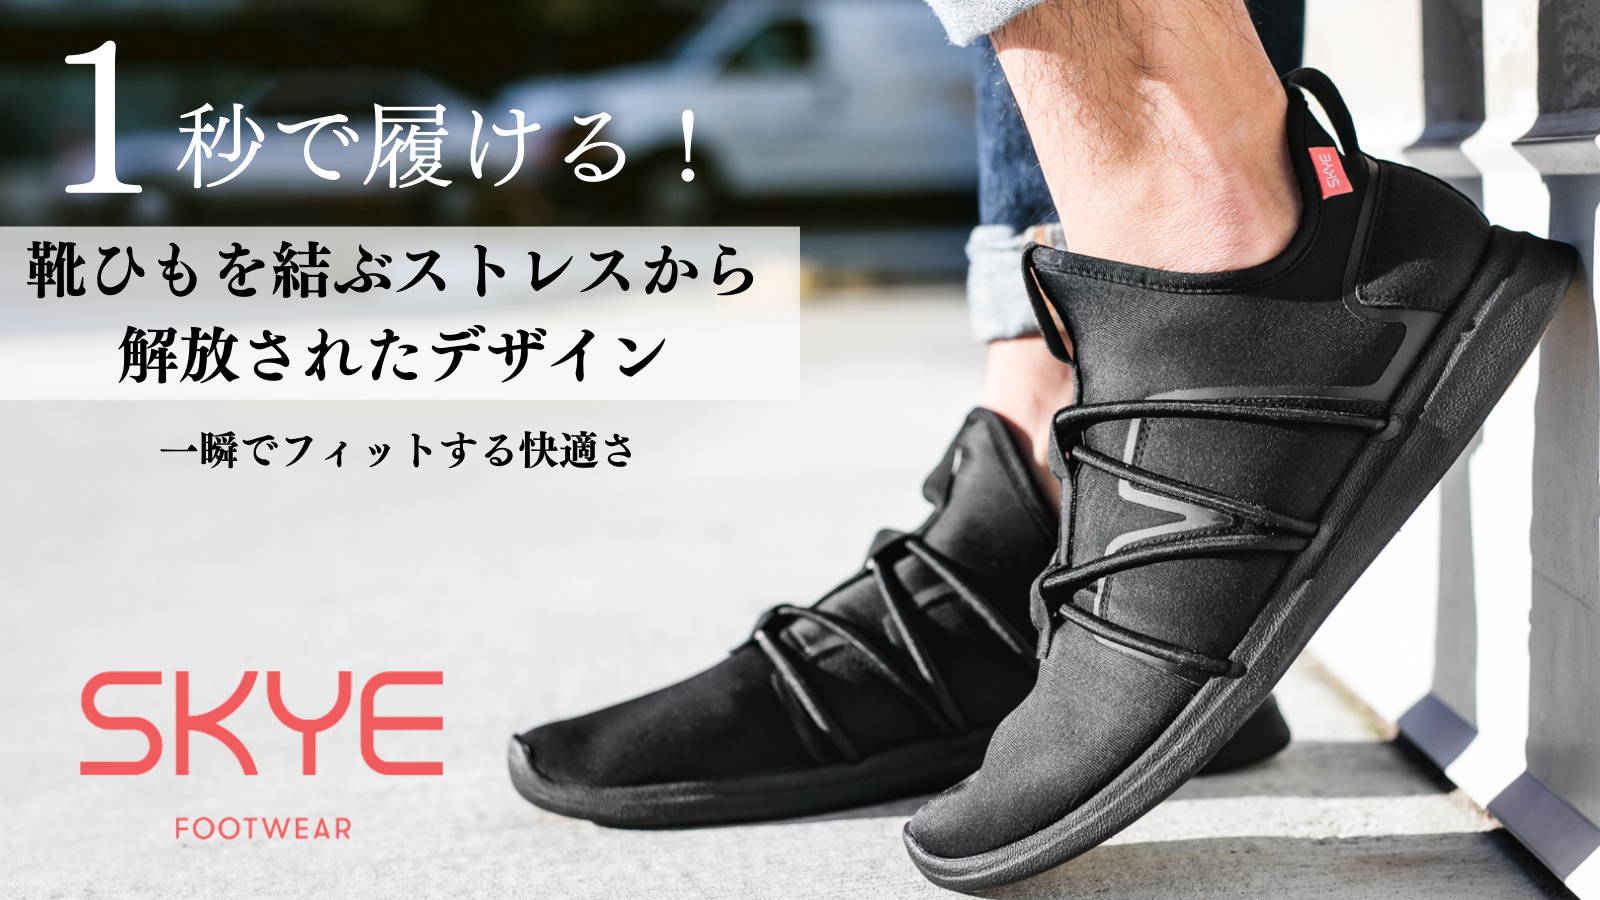 The Rbutus – SKYE Footwear Japan